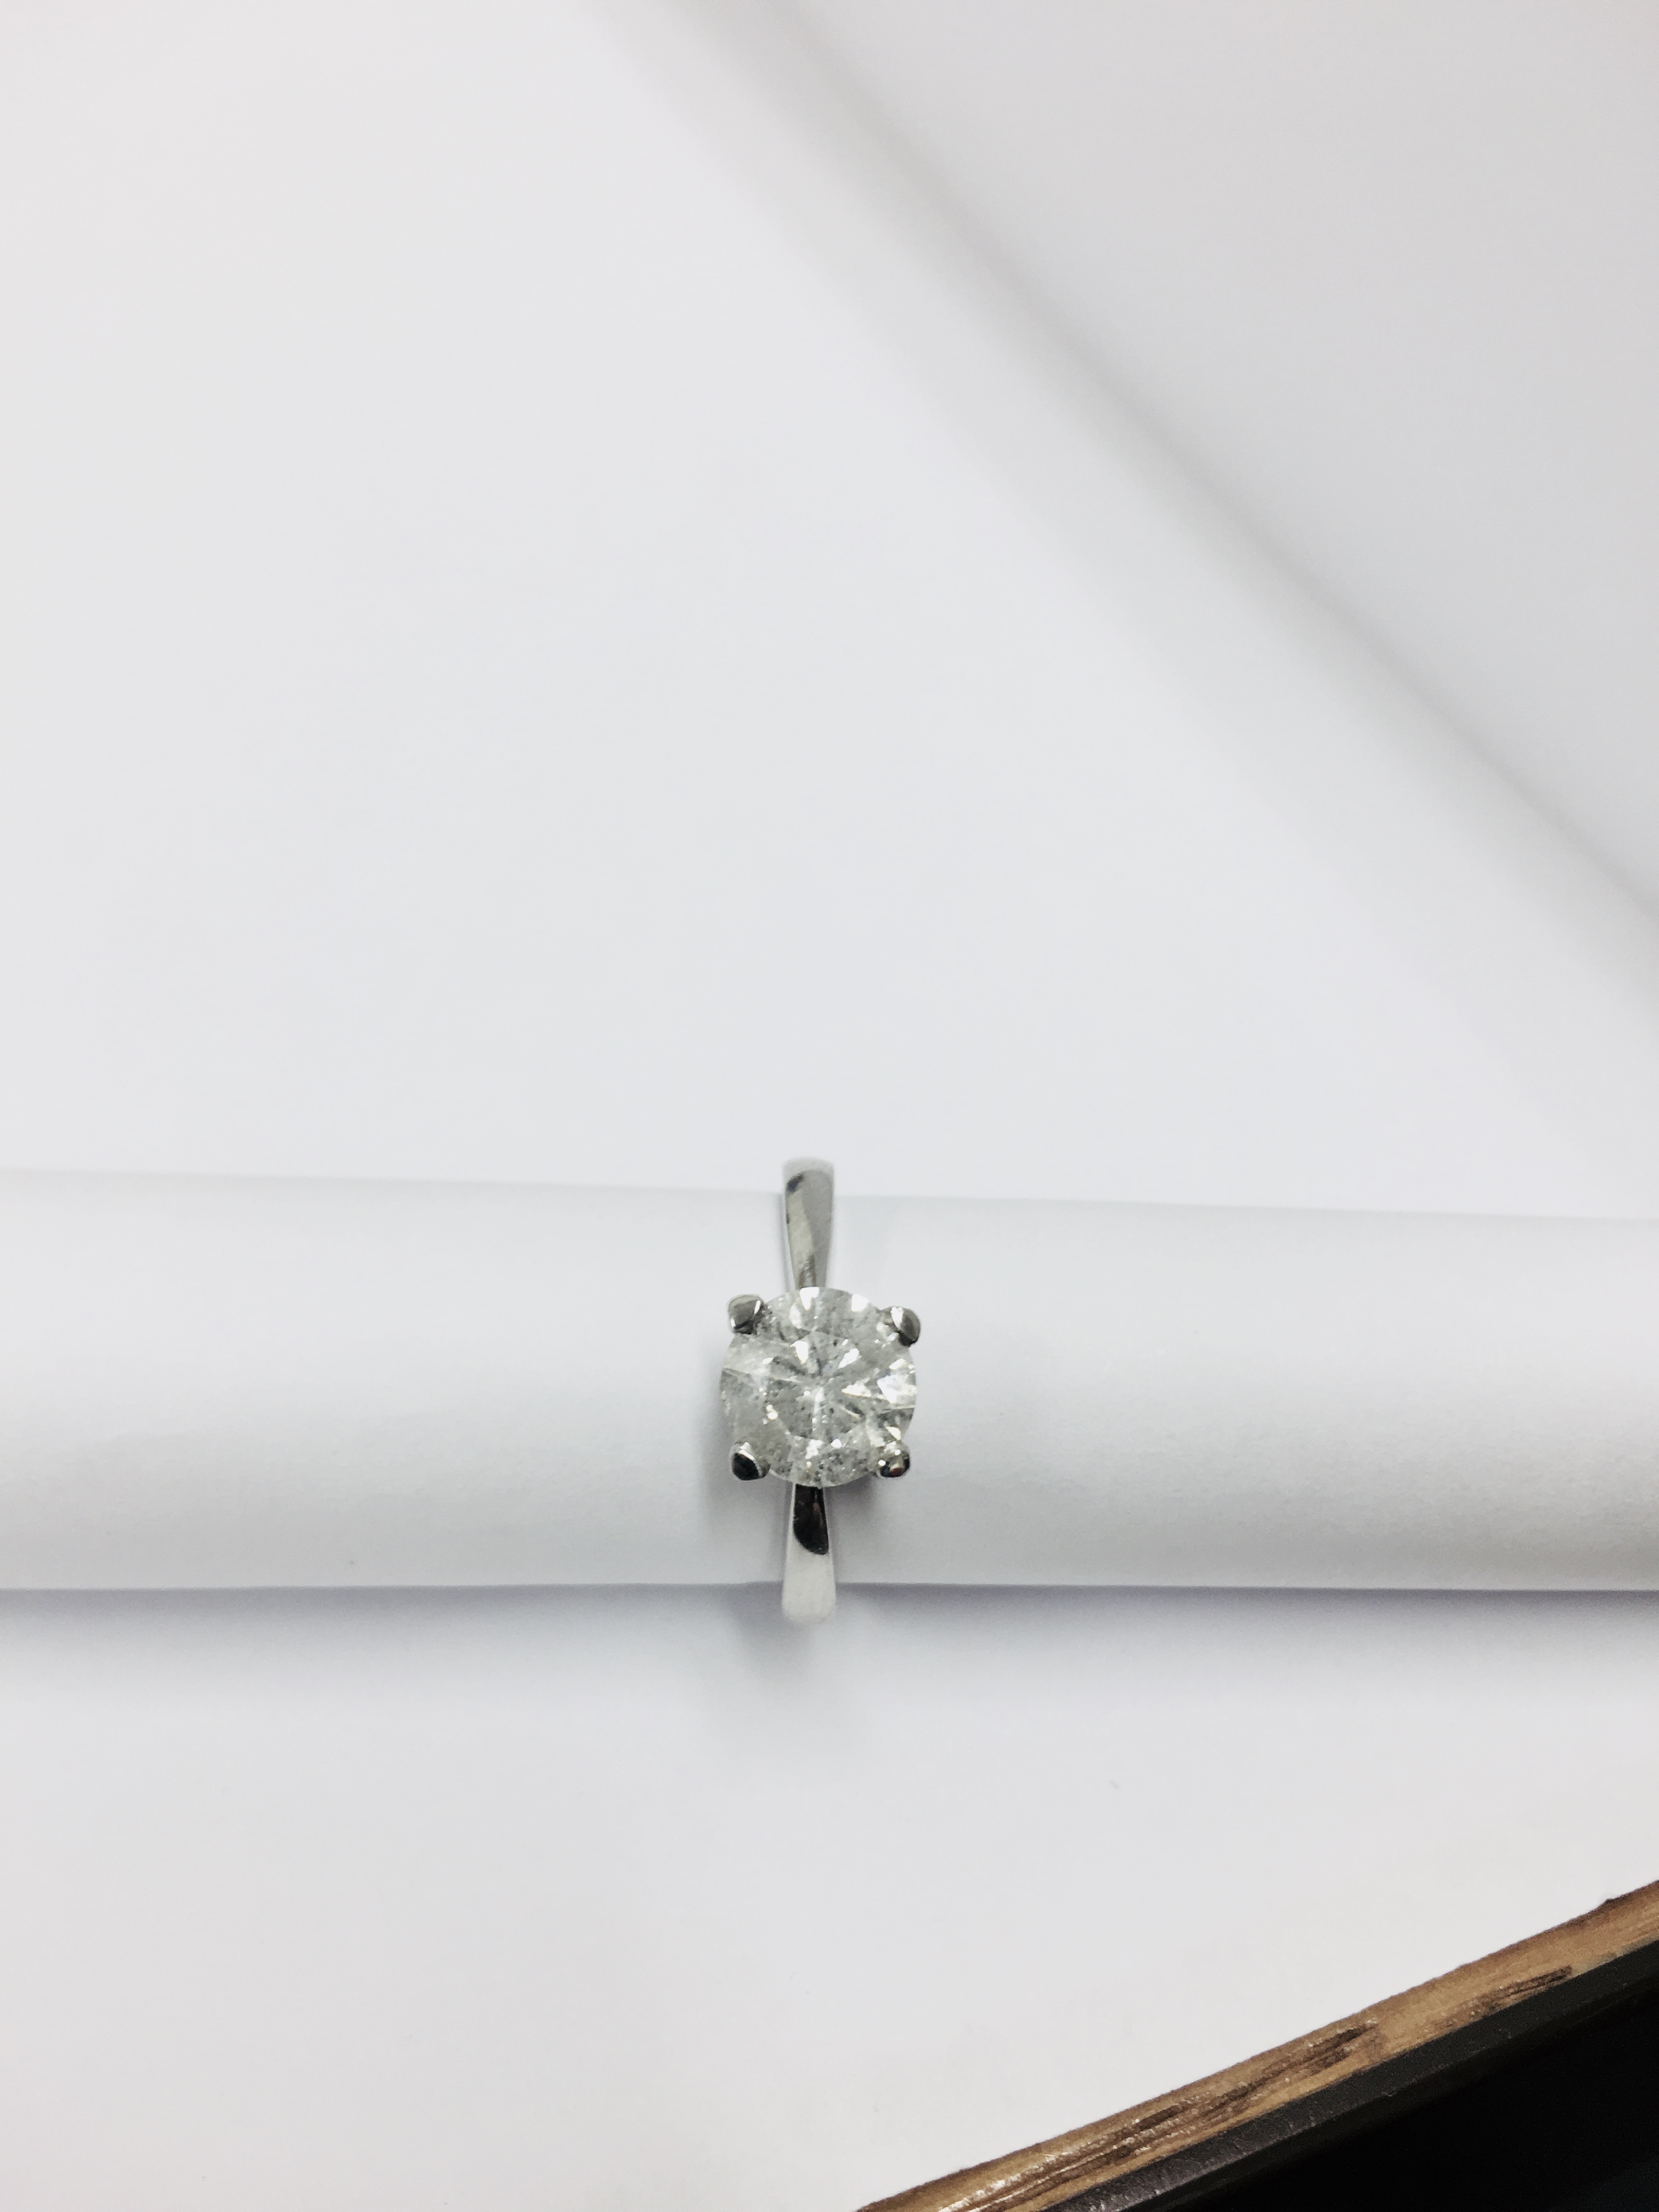 2.08ct diamond solitaire ring set in platinum - Image 5 of 48